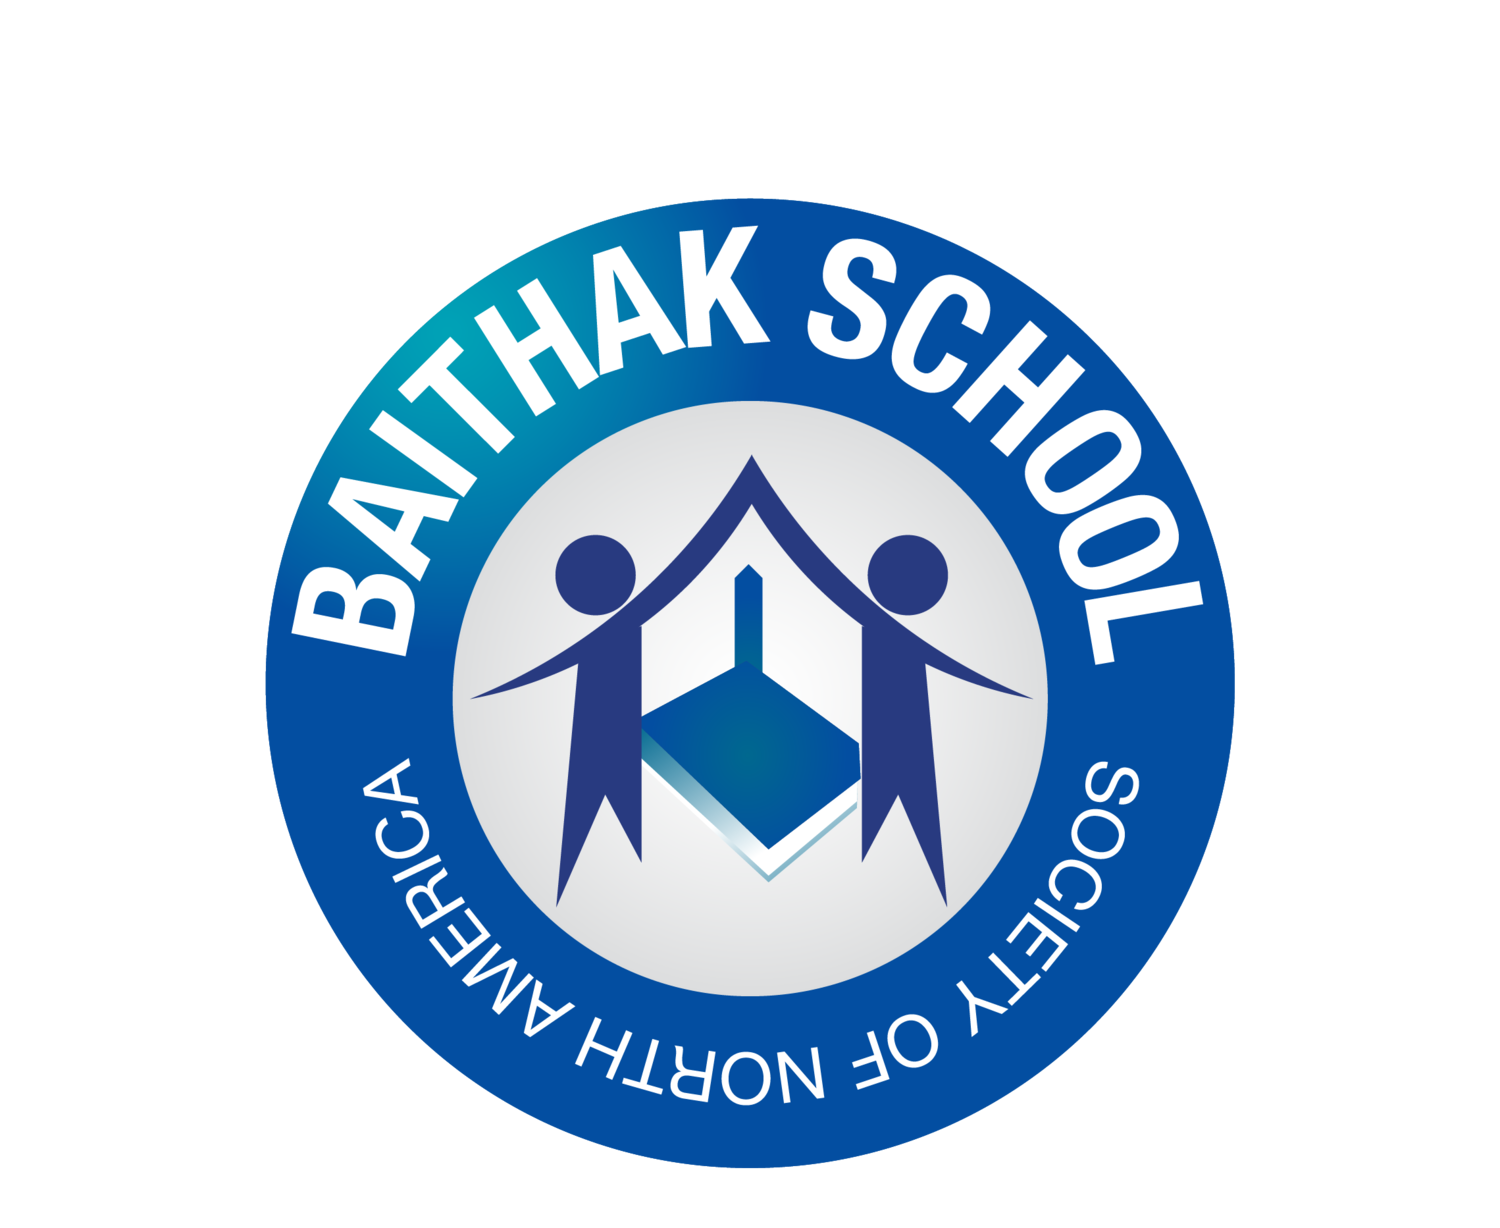 Baithak School